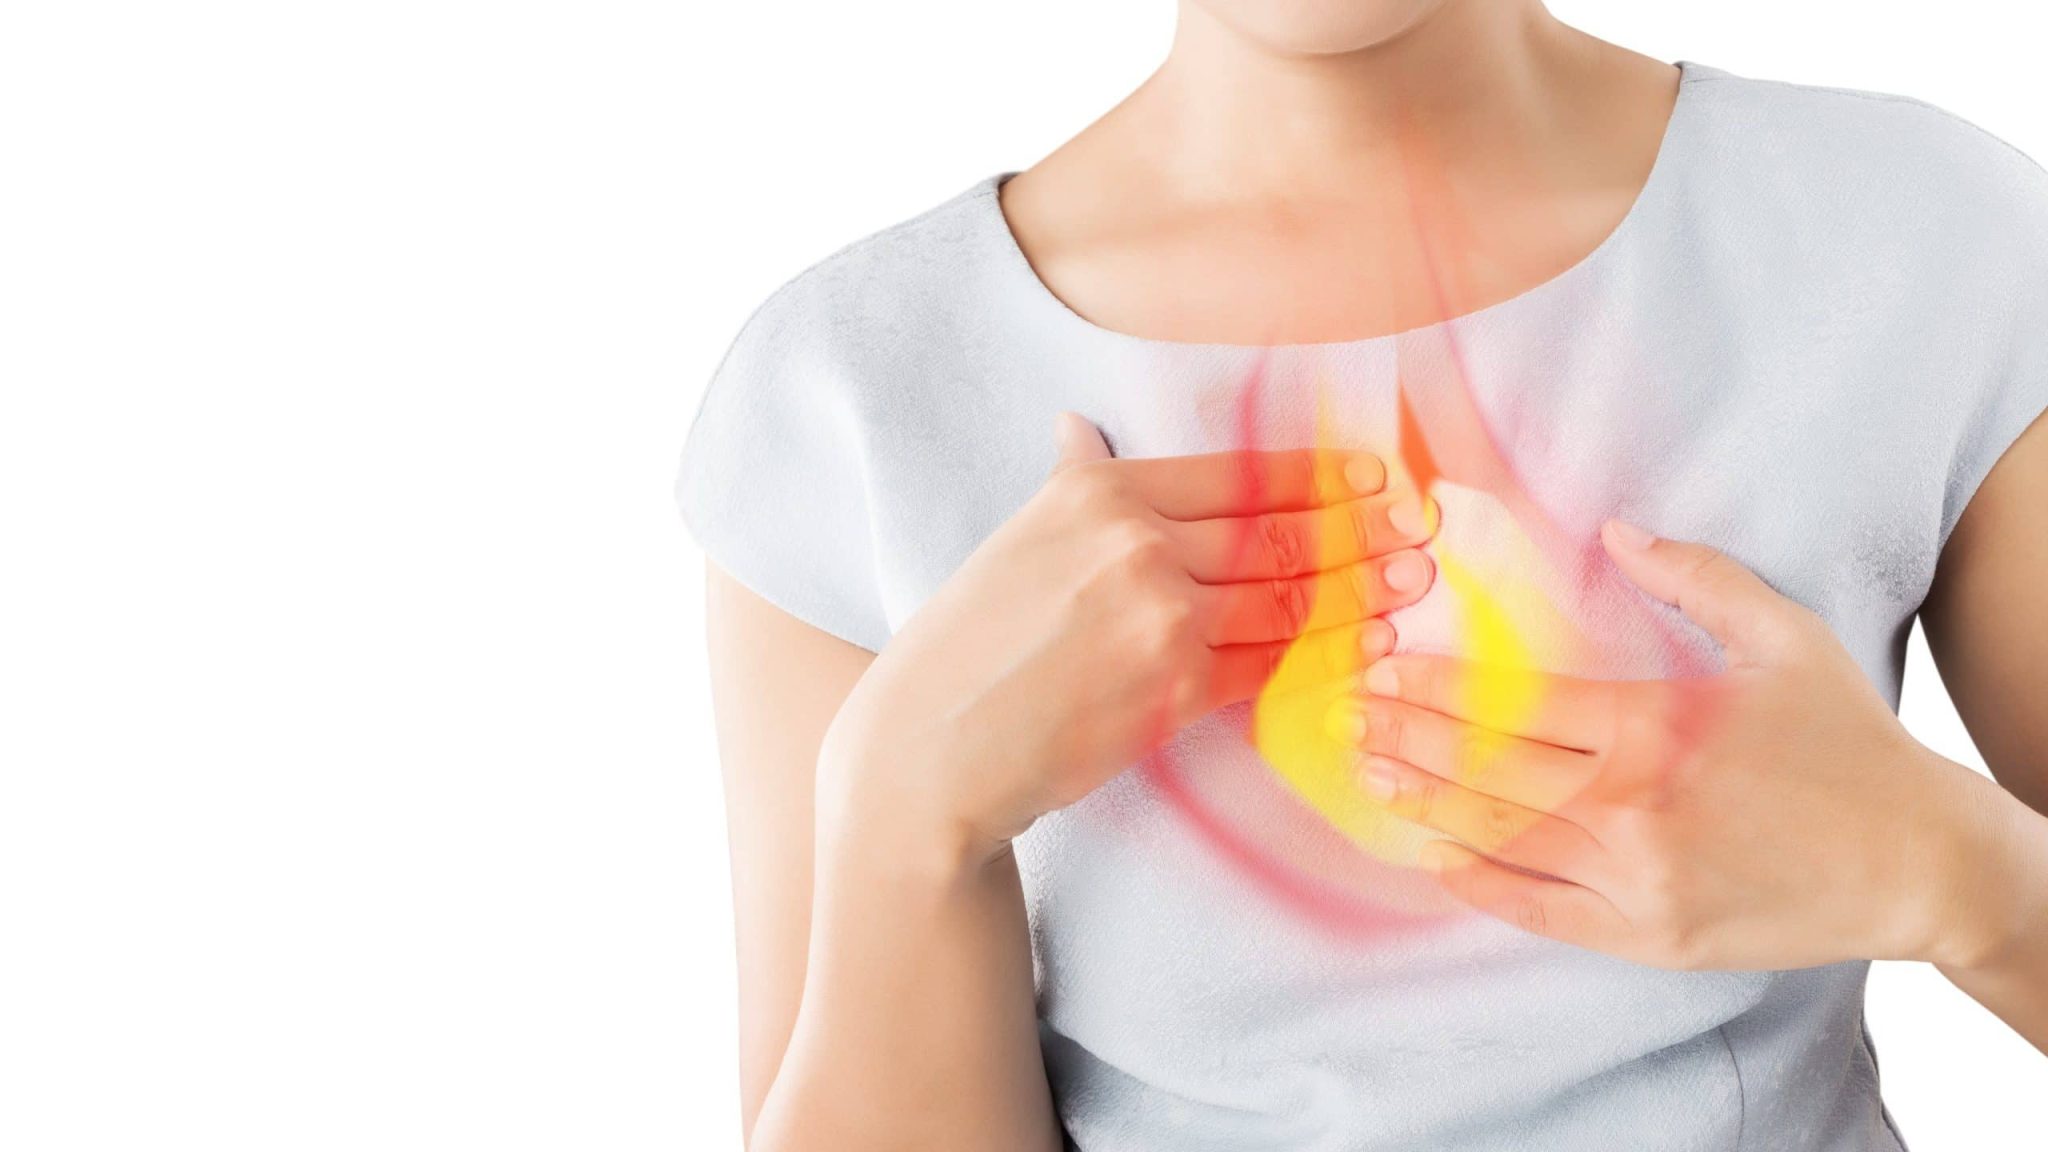 Ợ nóng là cảm giác nóng rát ở ngực, phía sau xương ức hoặc vùng bụng trên, thường do sự trào ngược axit trong dạ dày lên thực quản